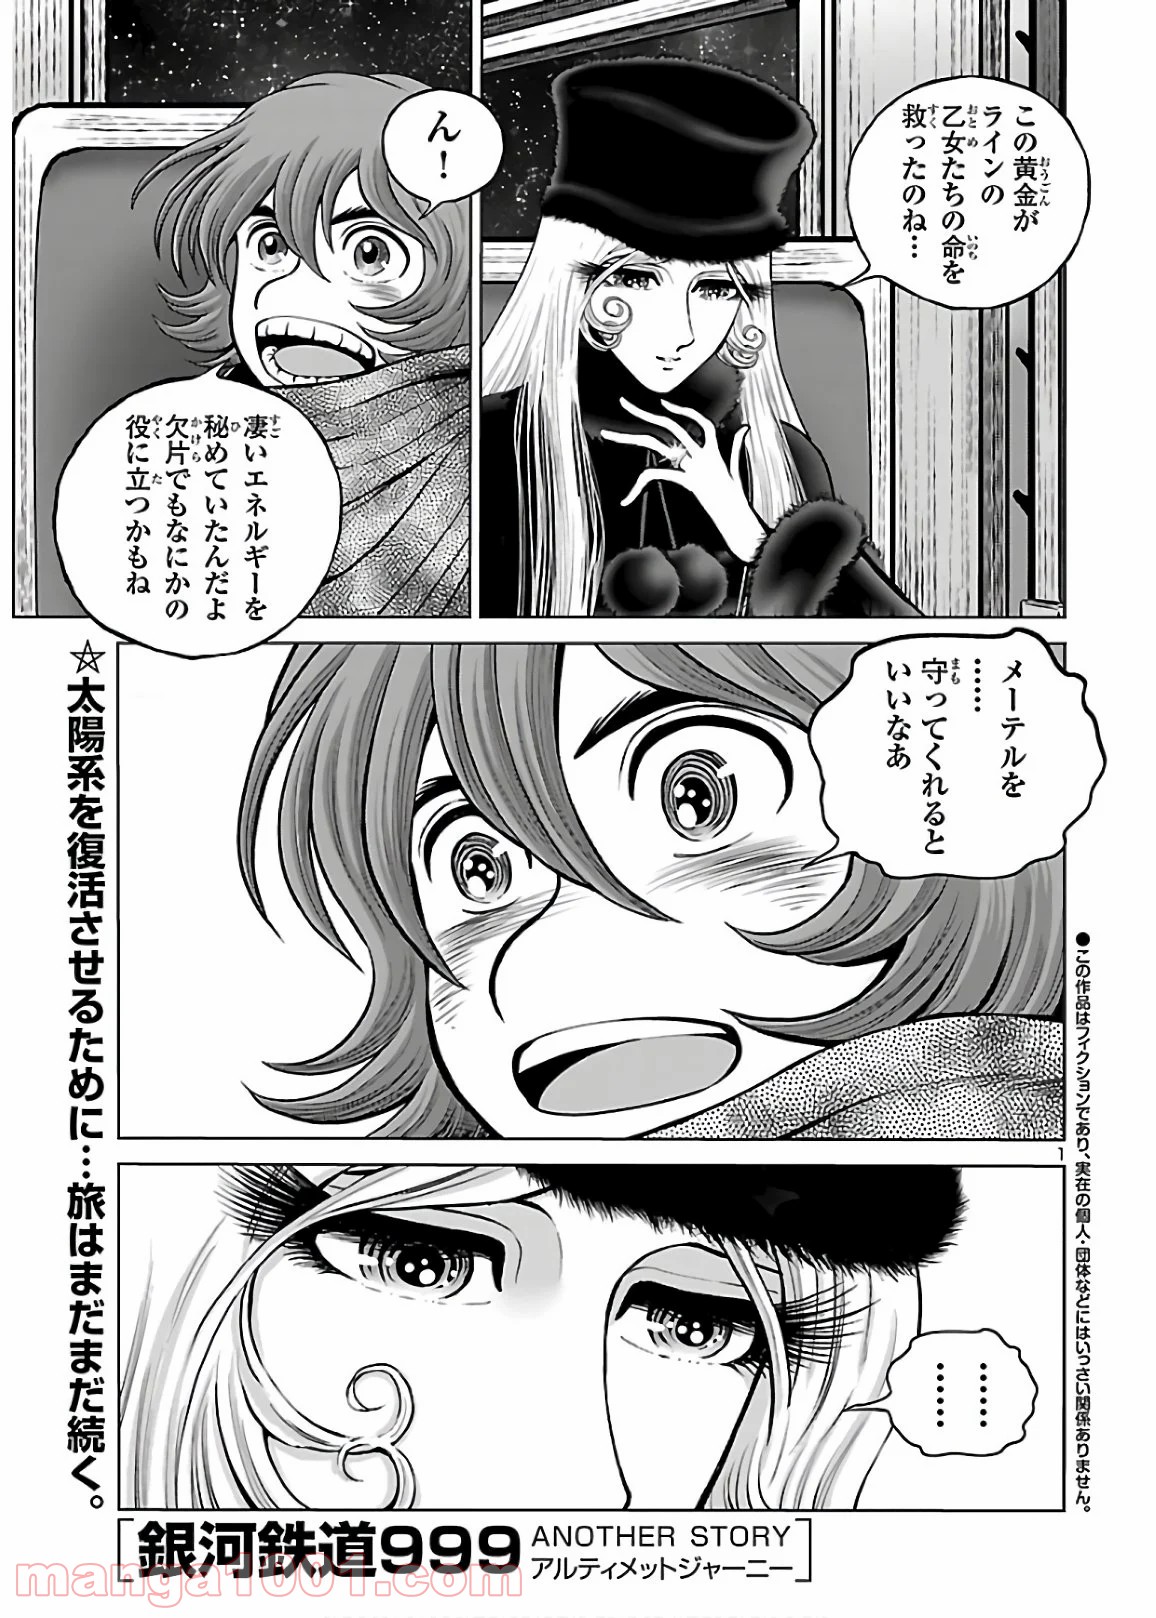 銀河鉄道999 Another Story アルティメットジャーニー Raw 第30話 Manga Raw